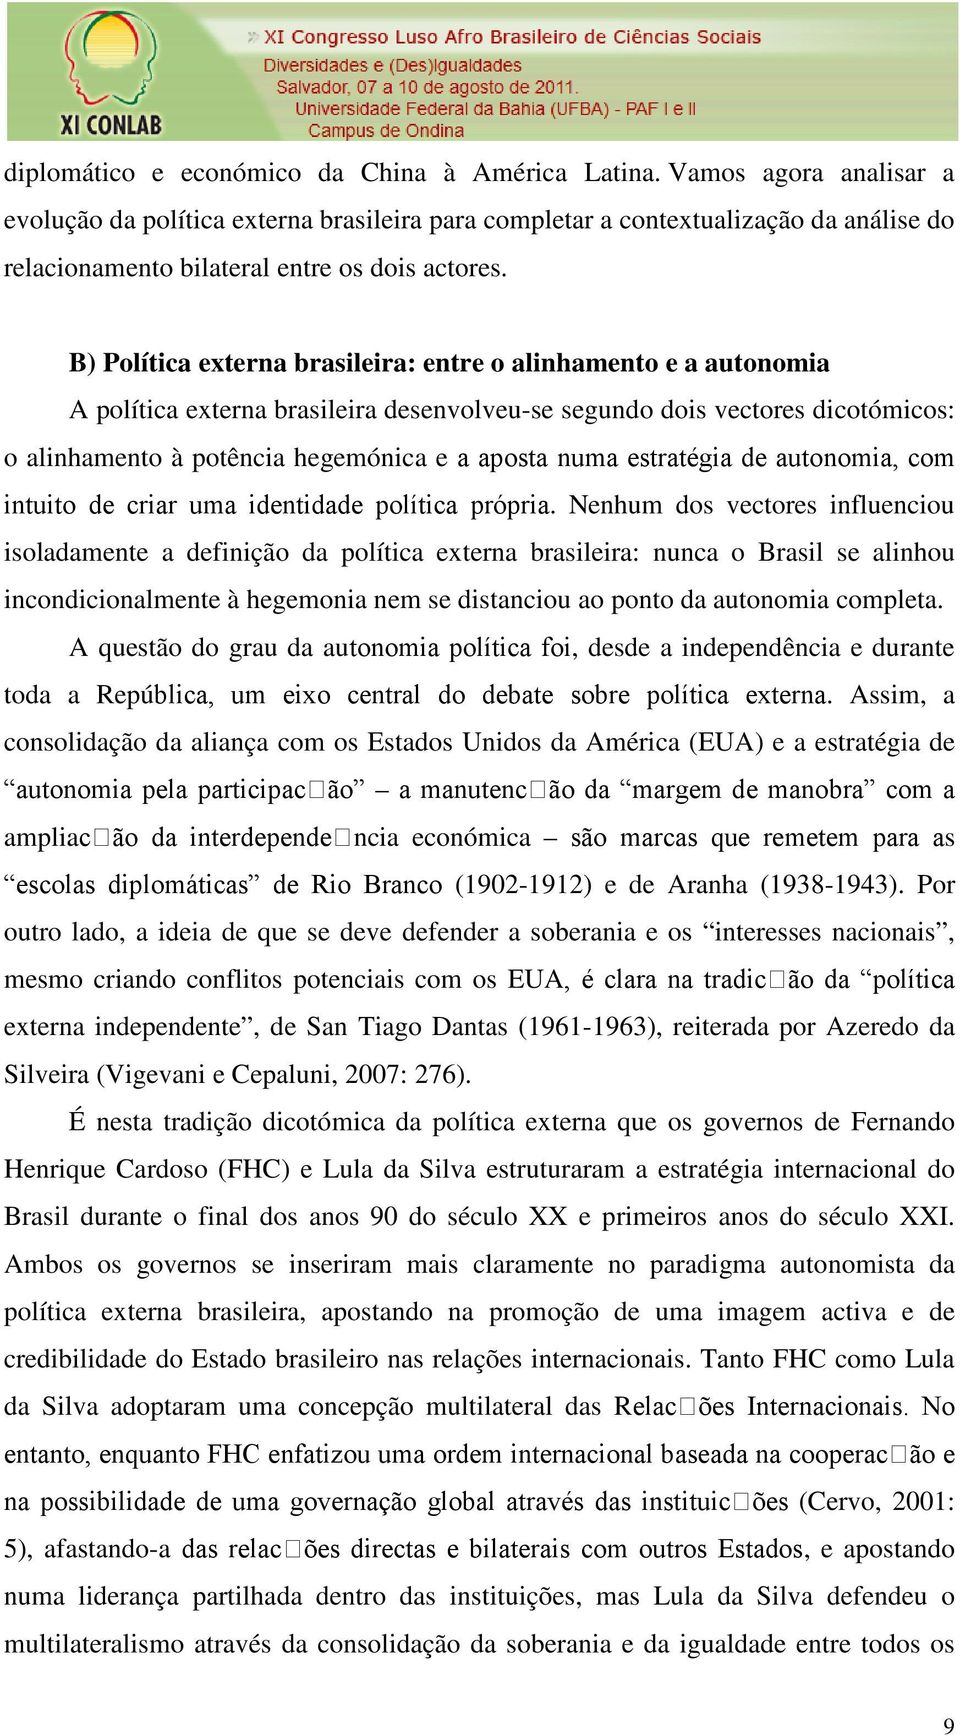 B) Política externa brasileira: entre o alinhamento e a autonomia A política externa brasileira desenvolveu-se segundo dois vectores dicotómicos: o alinhamento à potência hegemónica e a aposta numa